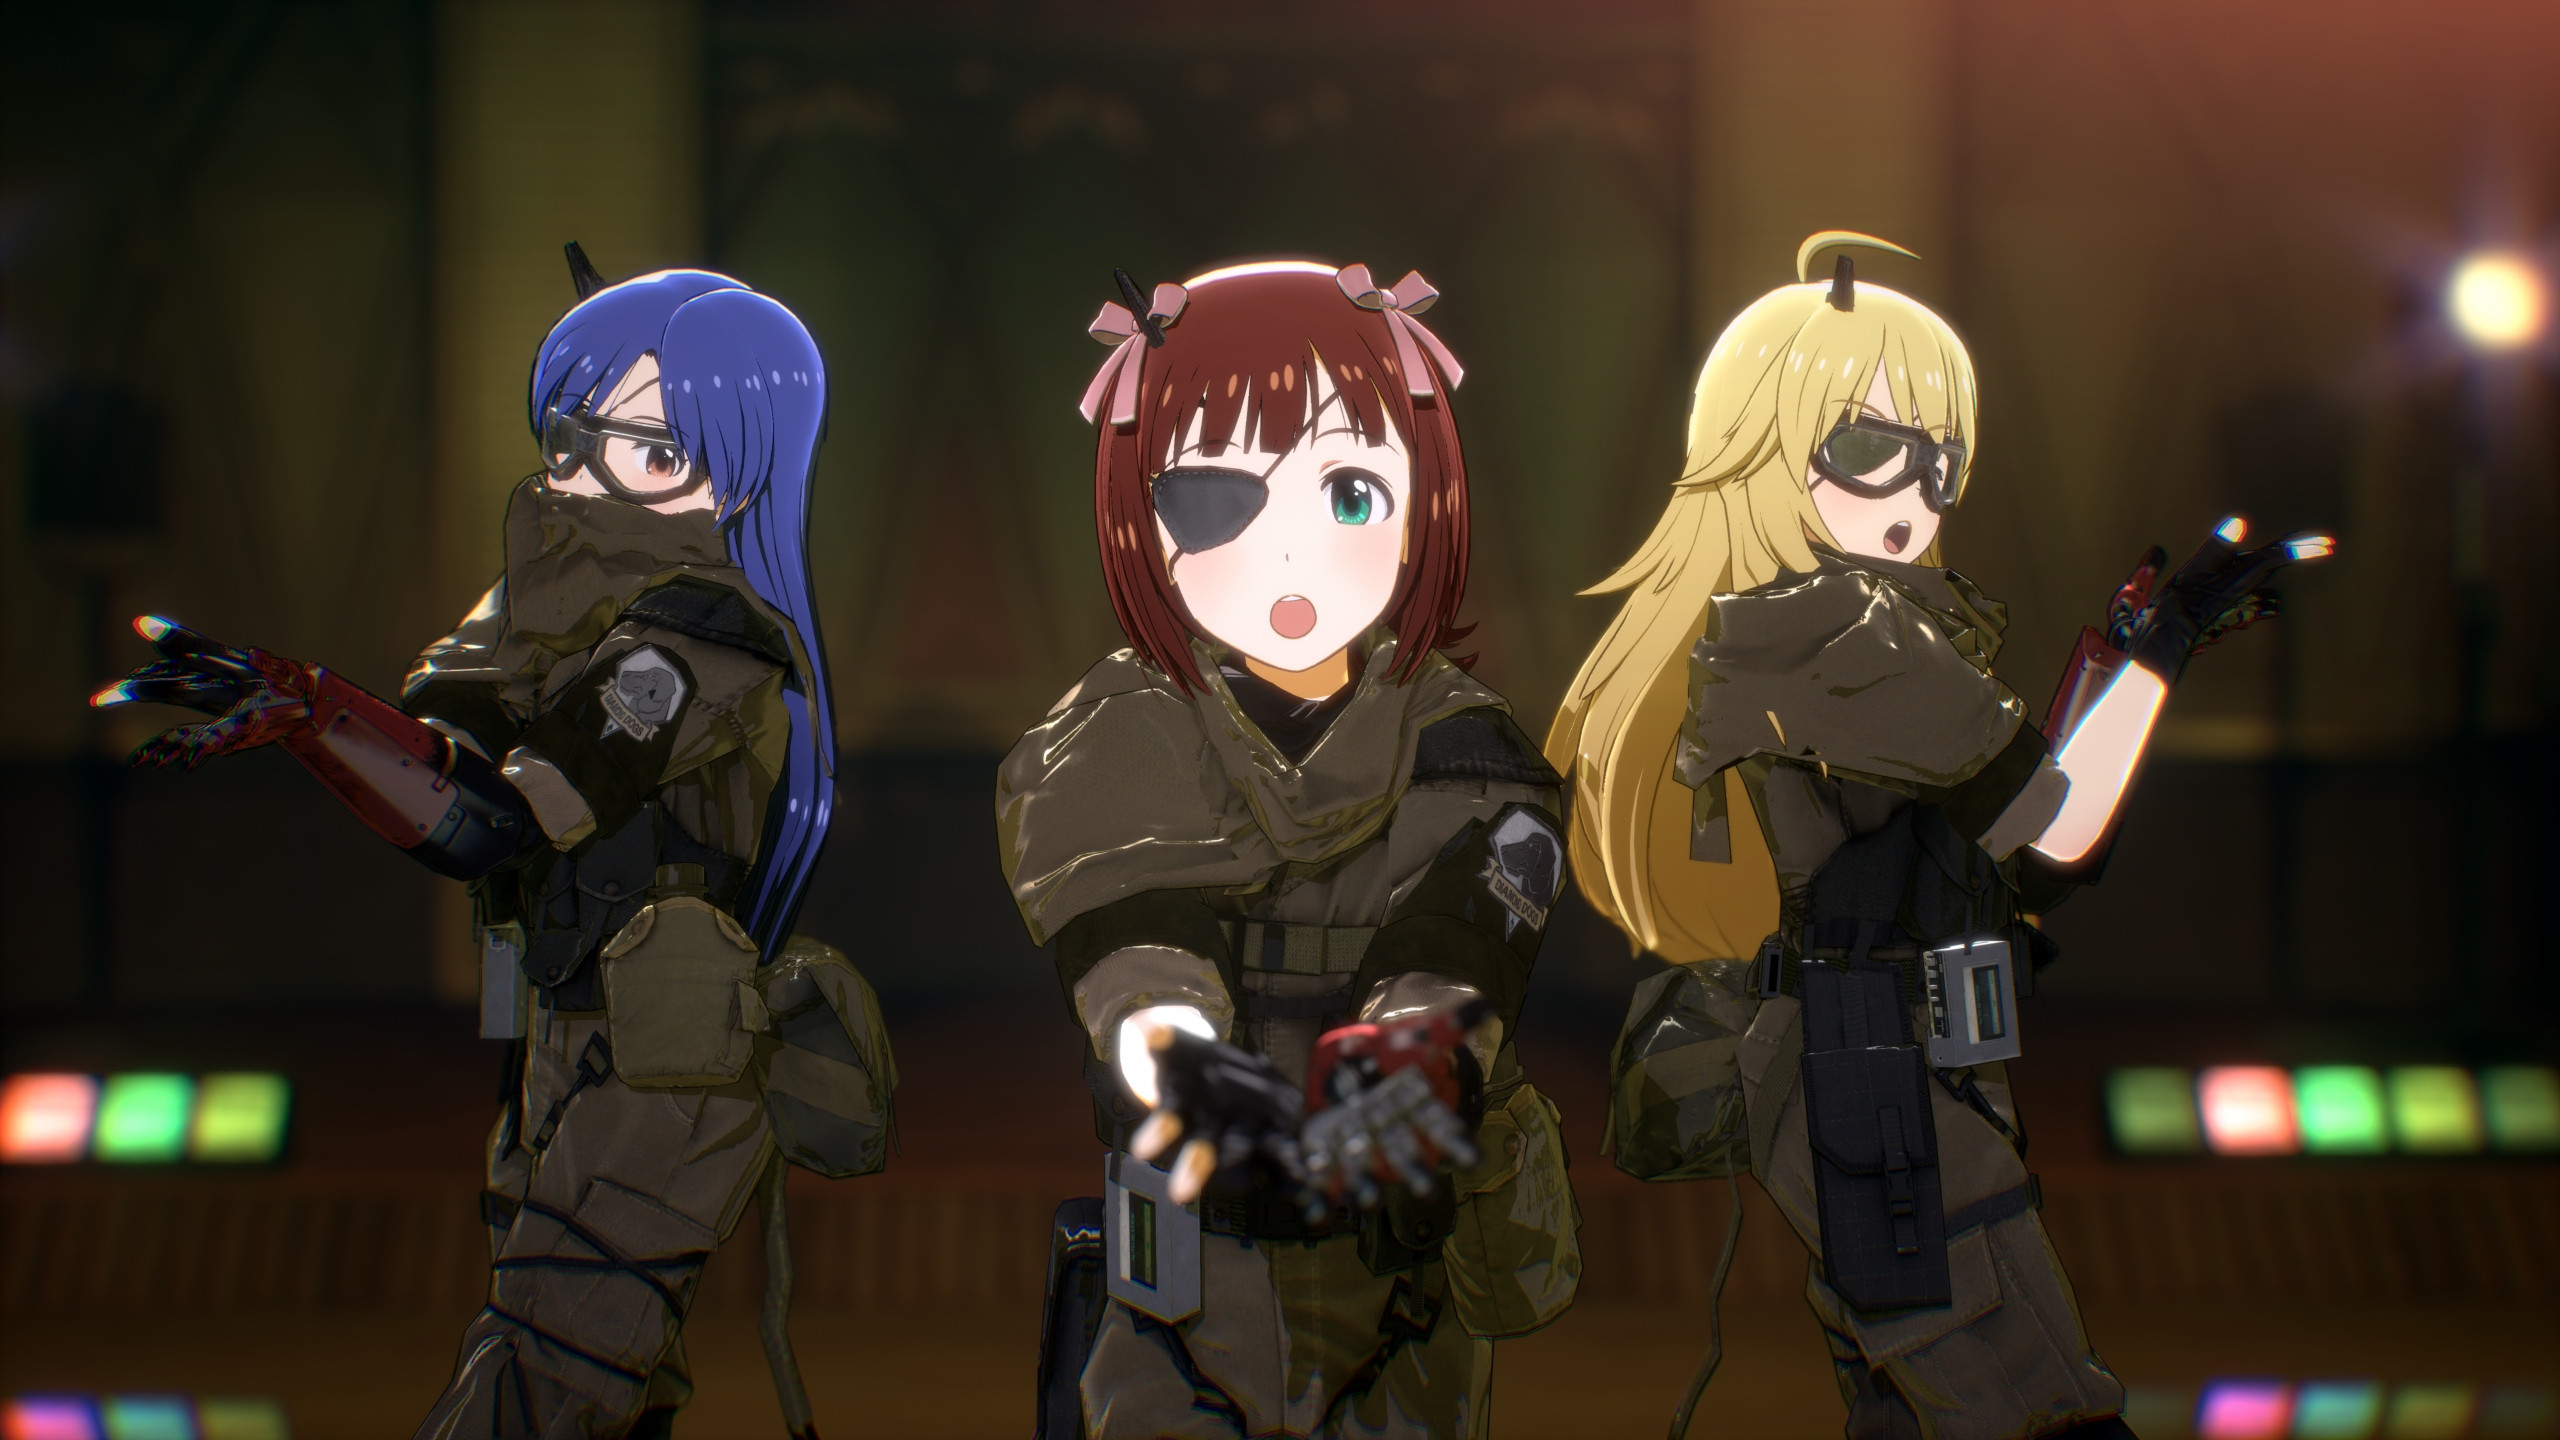 Metal Gear Solid pronto estrenará anime gracias a los fans